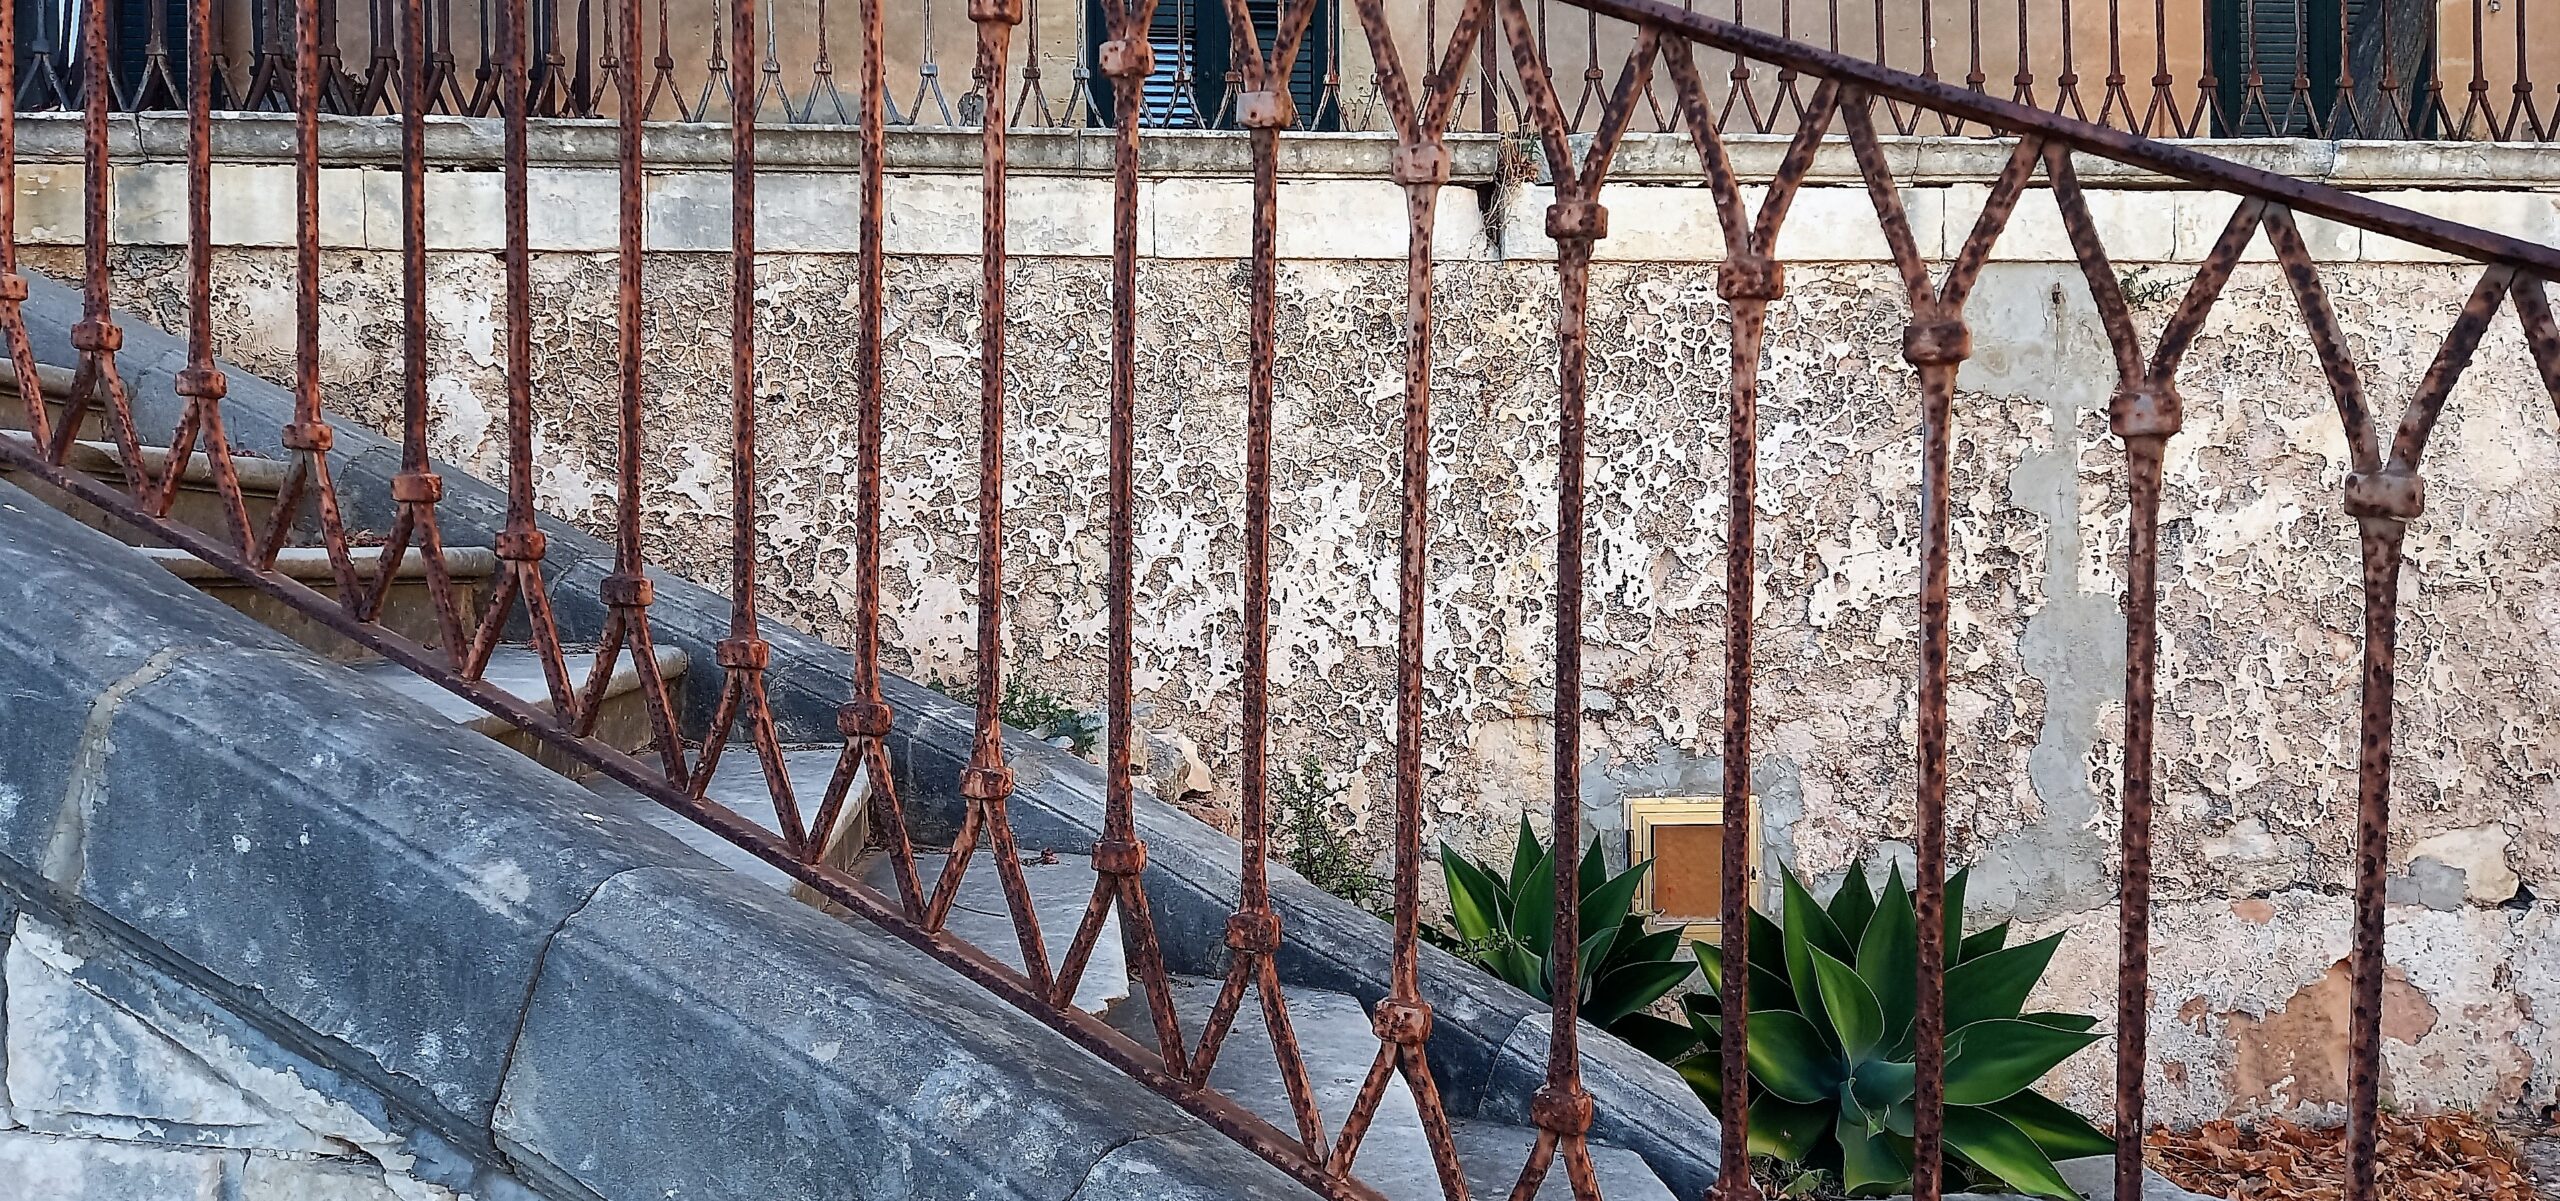 la castellana marina di ragusa visionaria sicily needs love scale